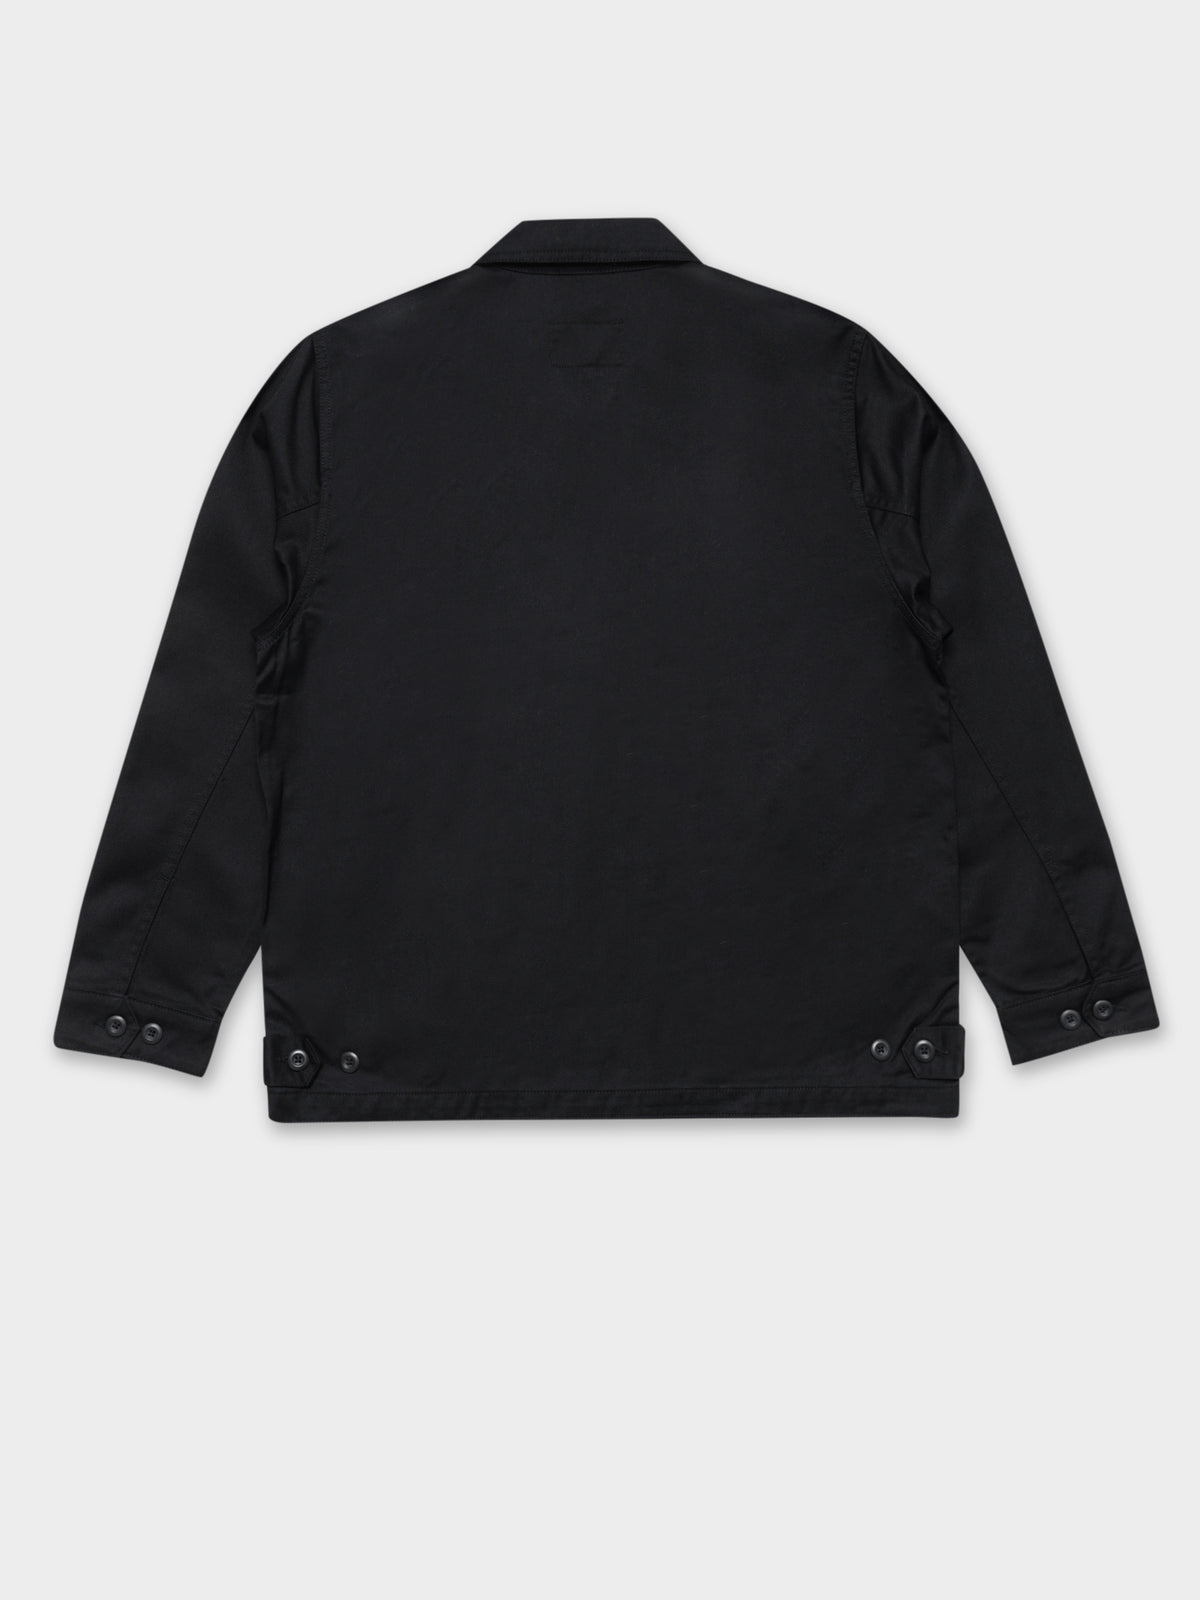 Modular Jacket in Black